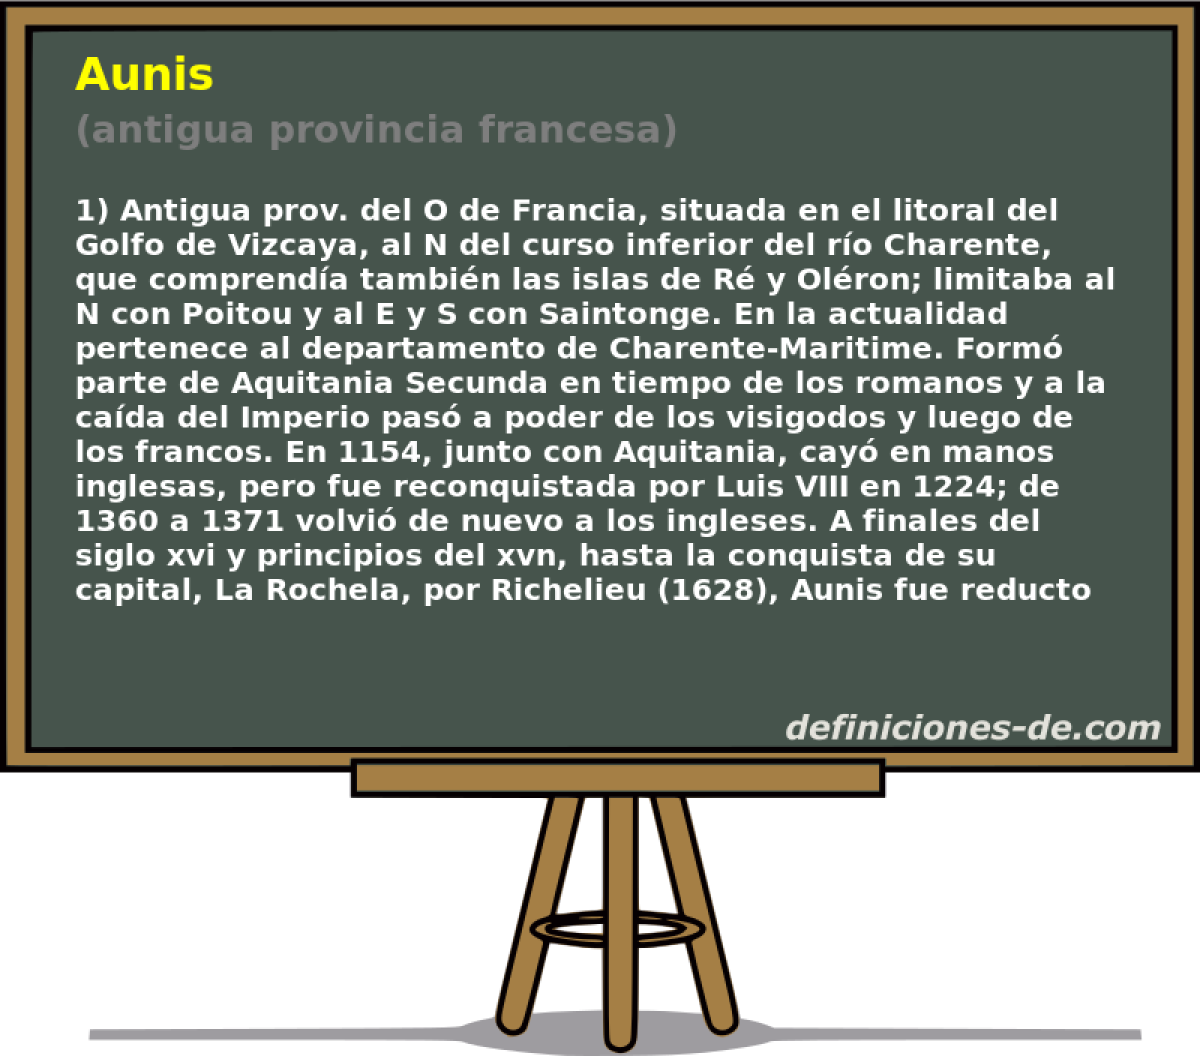 Aunis (antigua provincia francesa)